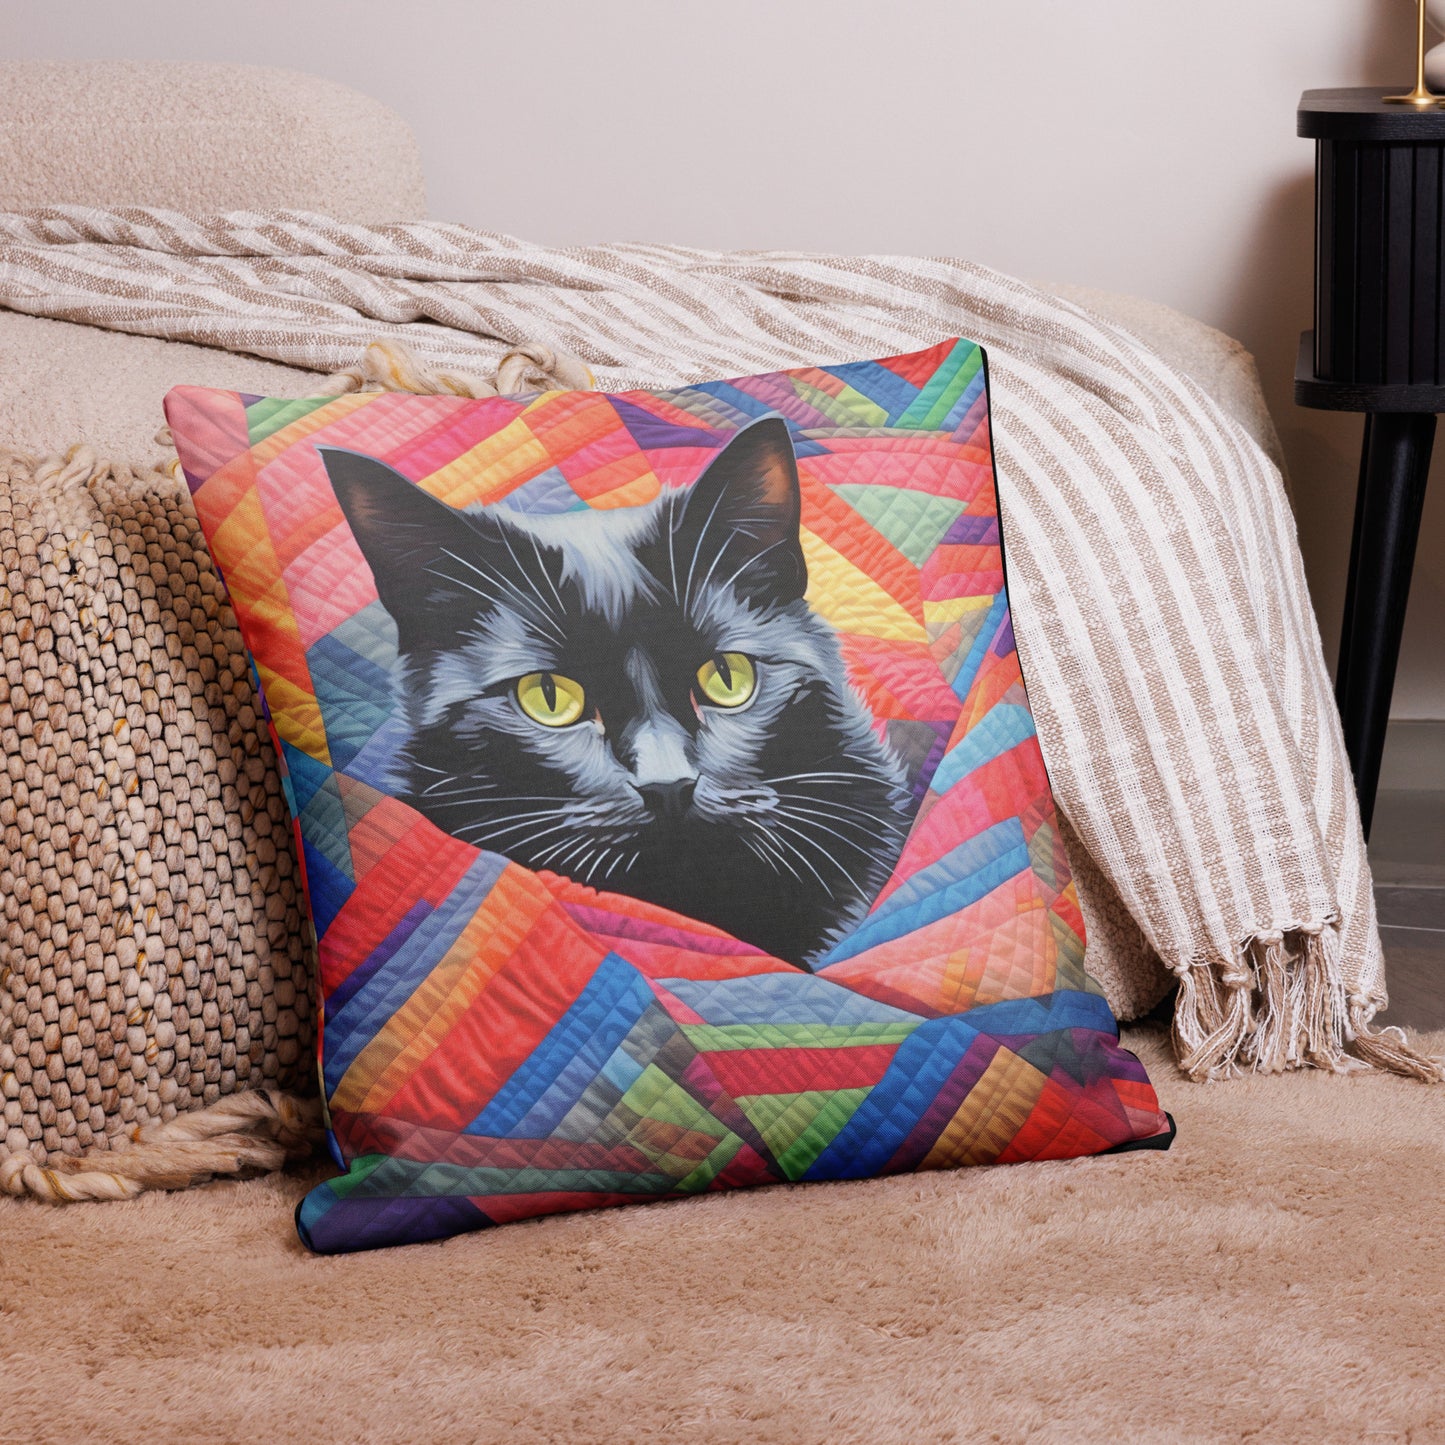 Poupon - Black Cat on a Quilt Pillow